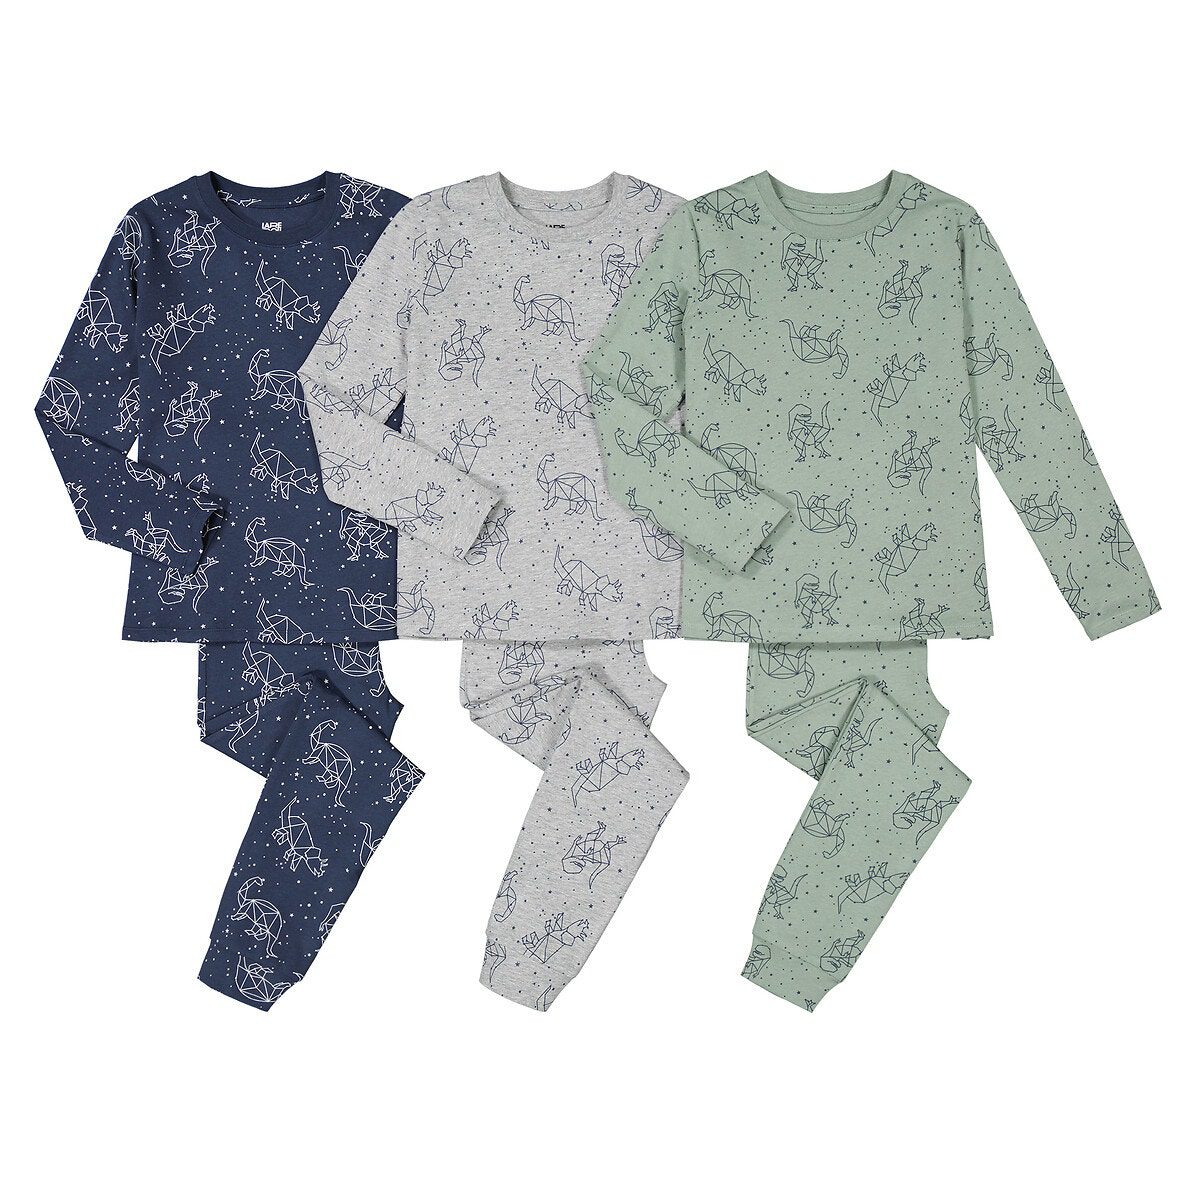 Σετ 3 βαμβακερές πιτζάμες με μοτίβο δεινόσαυρους Μπλε